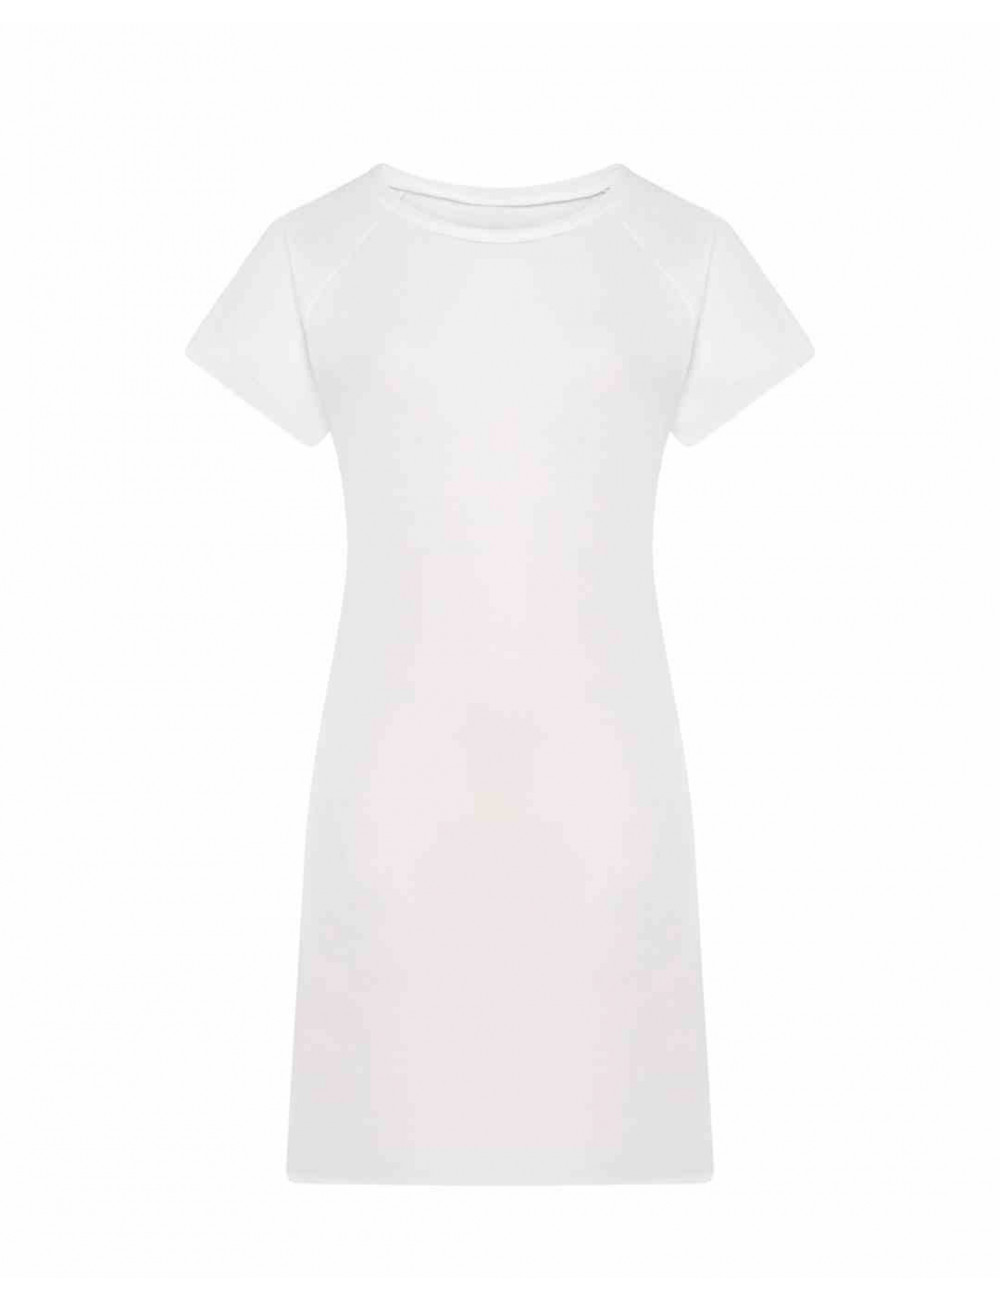 Koszulka damska sublimacja subli dress biały wydajny Jhk